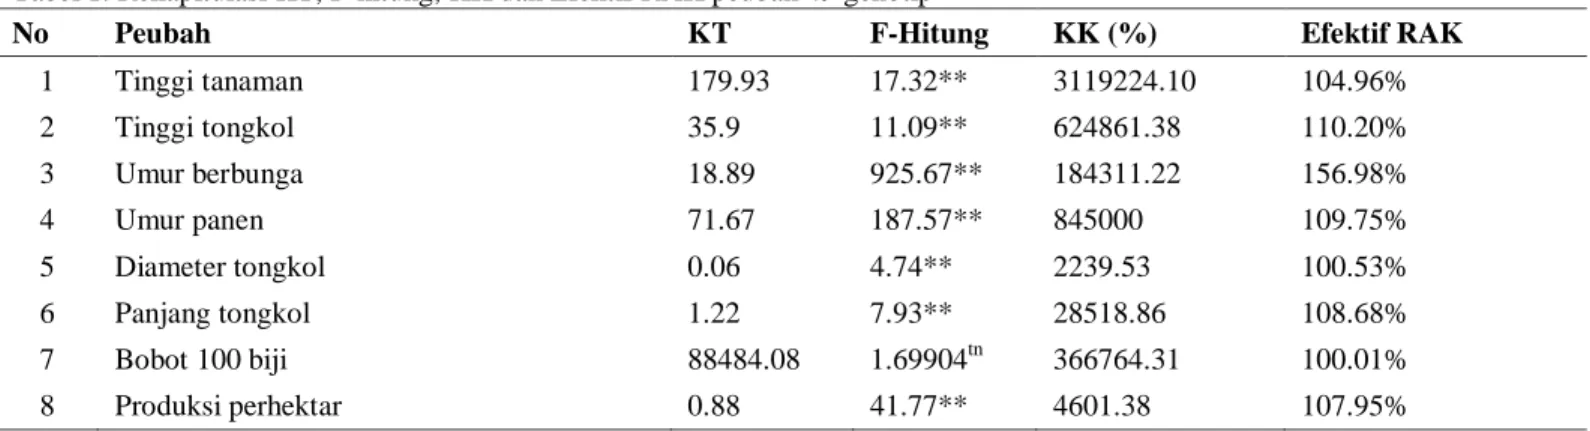 Tabel 1. Rekapitulasi KT, F-hitung, KK dan Efektif RAK peubah 49 genotip  